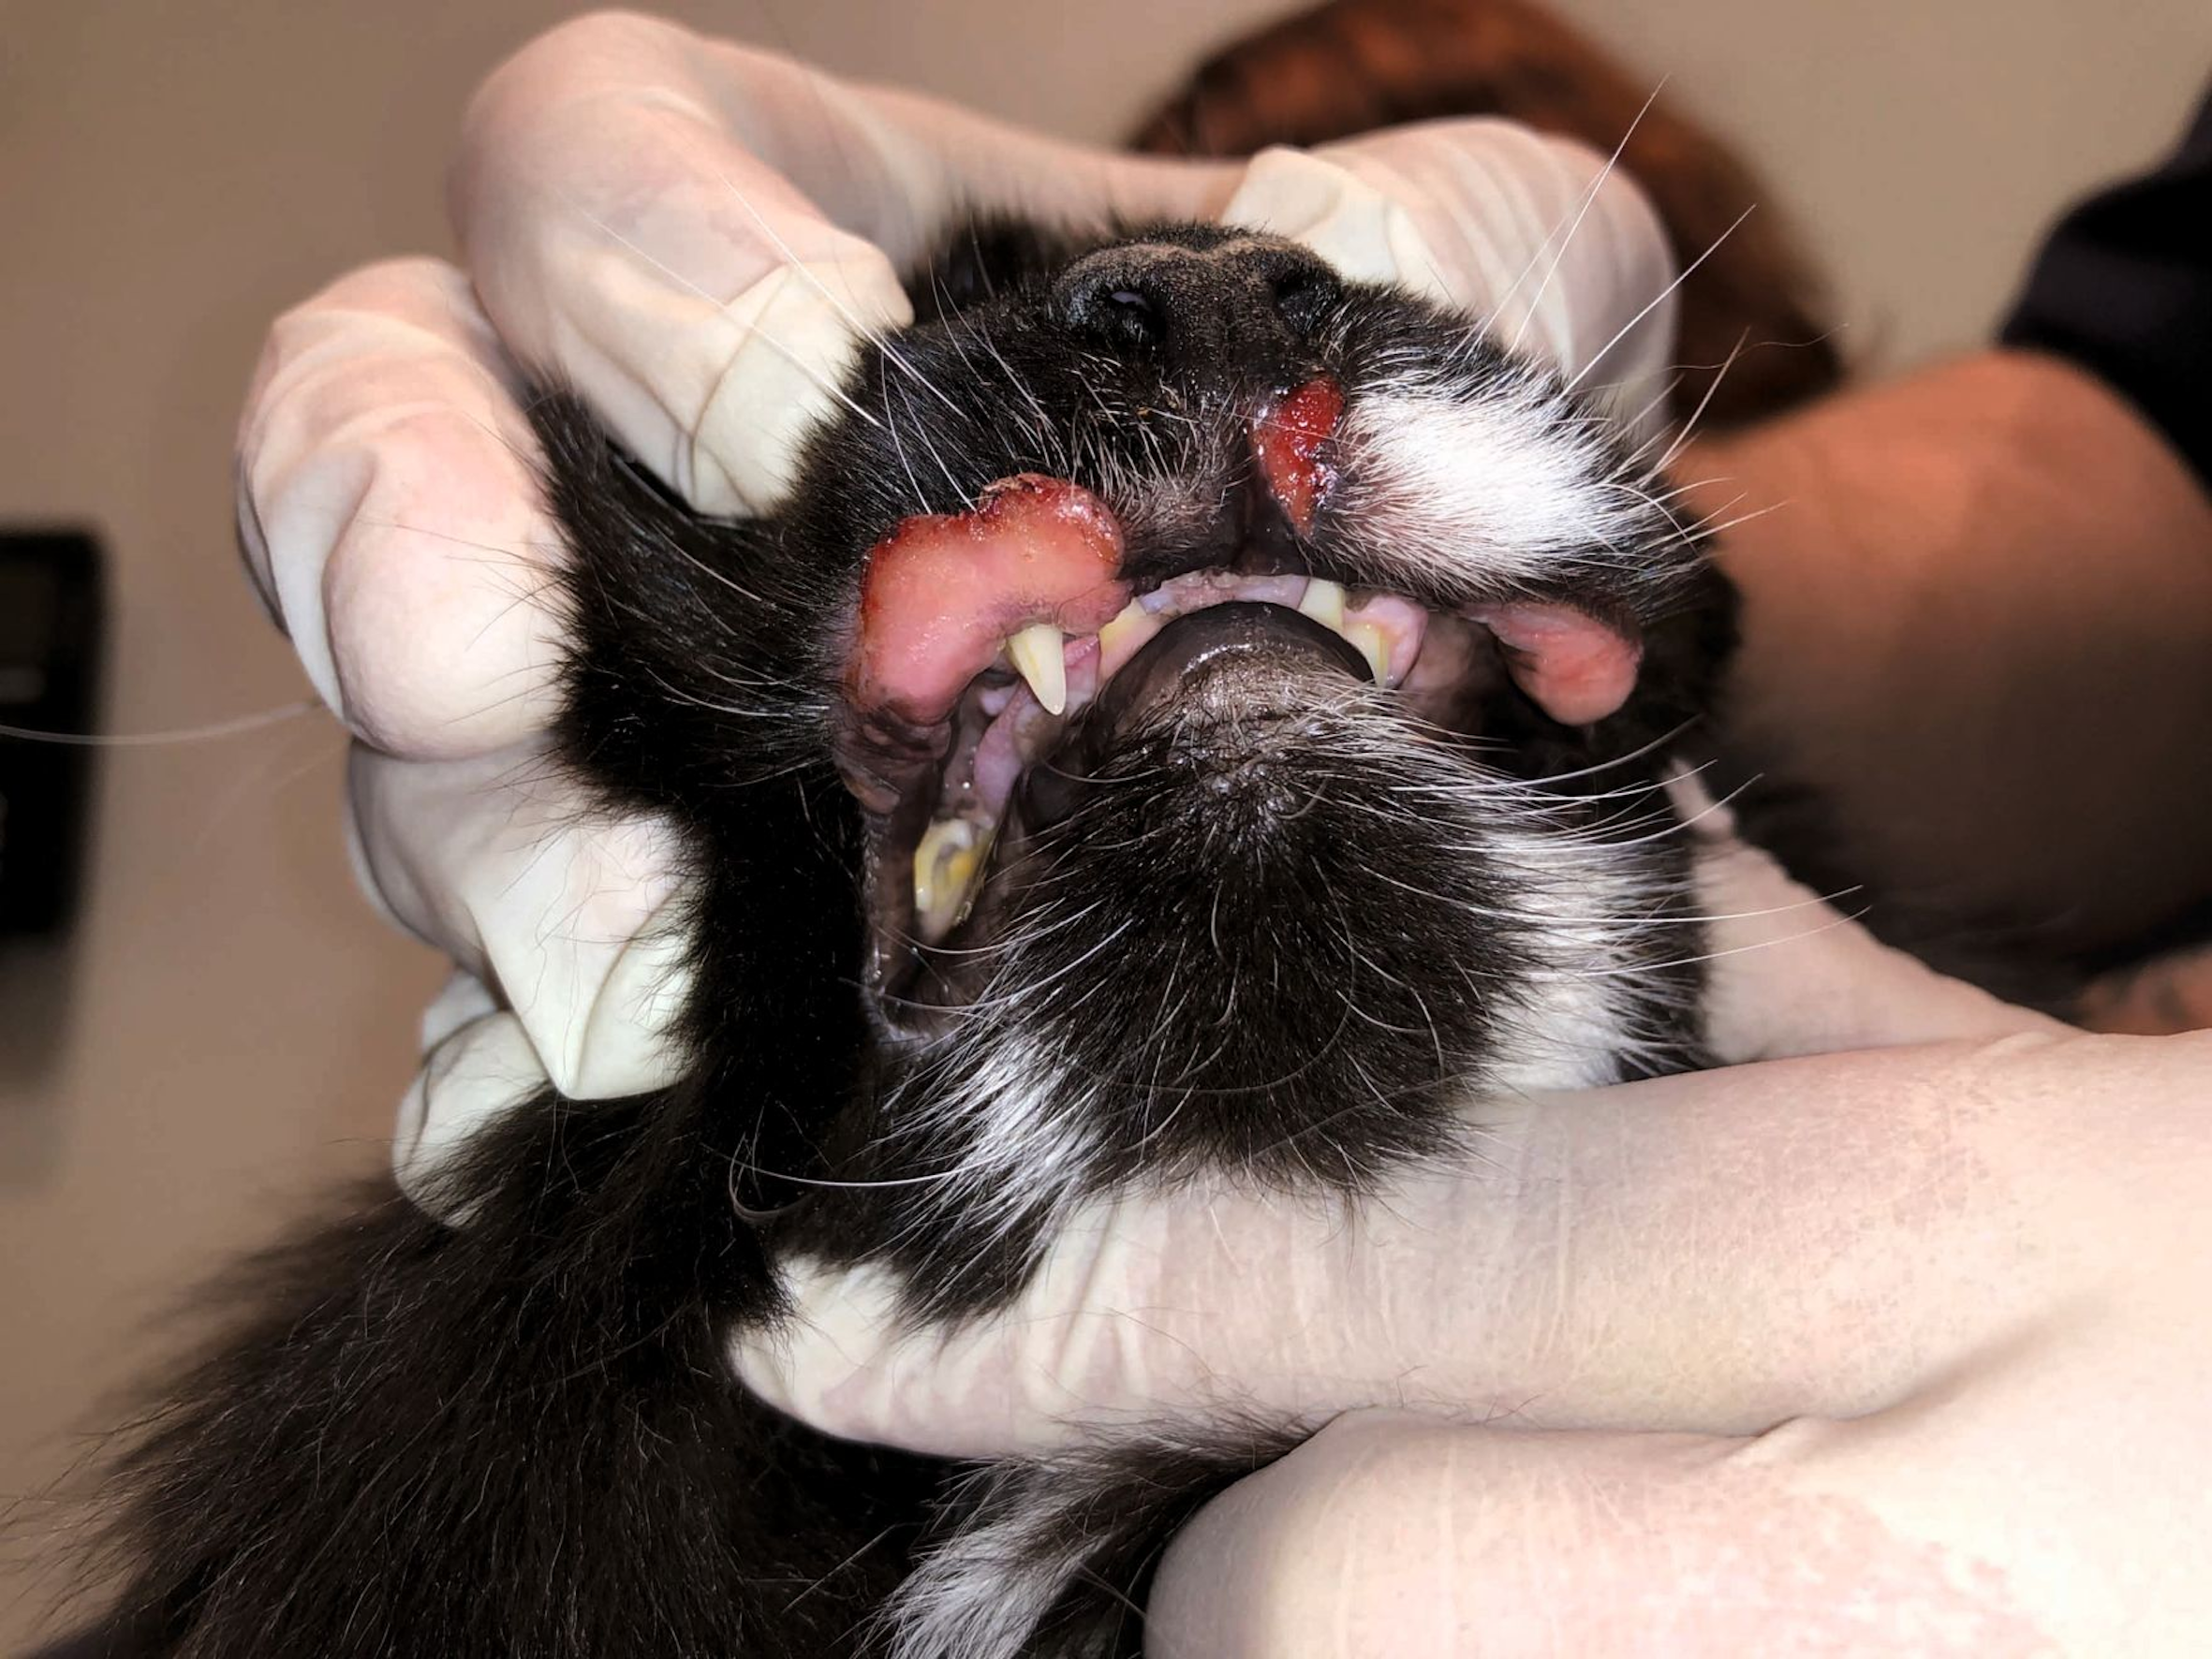 Gato con úlceras indolentes en el labio superior. Esta es una presentación frecuente asociada al complejo granuloma eosinofílico